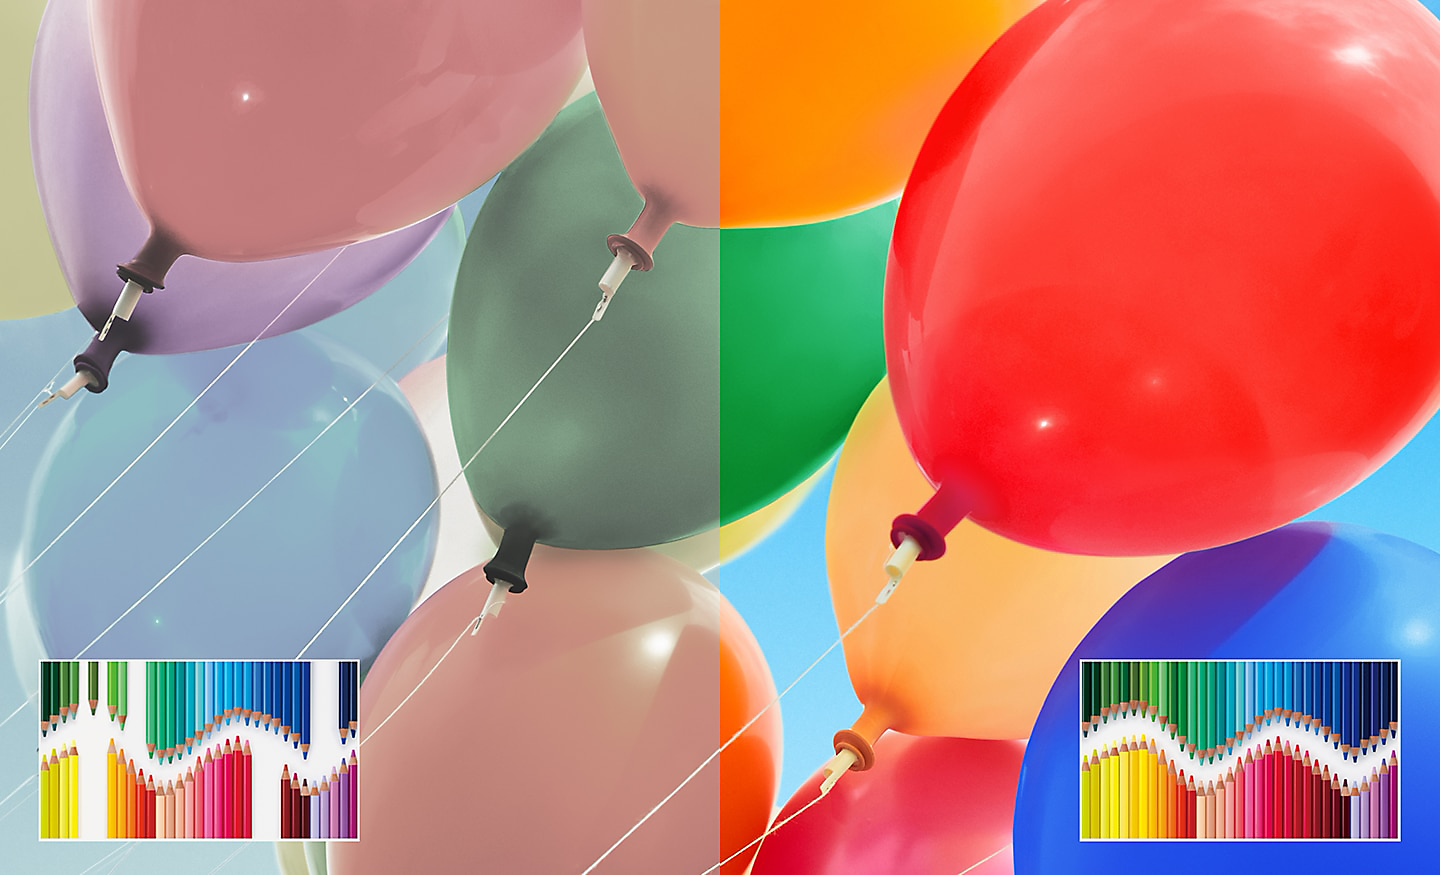 Jaettu kuva monivärisistä ilmapalloista, oikealla puolella on parannettu kirkkautta ja kontrastia